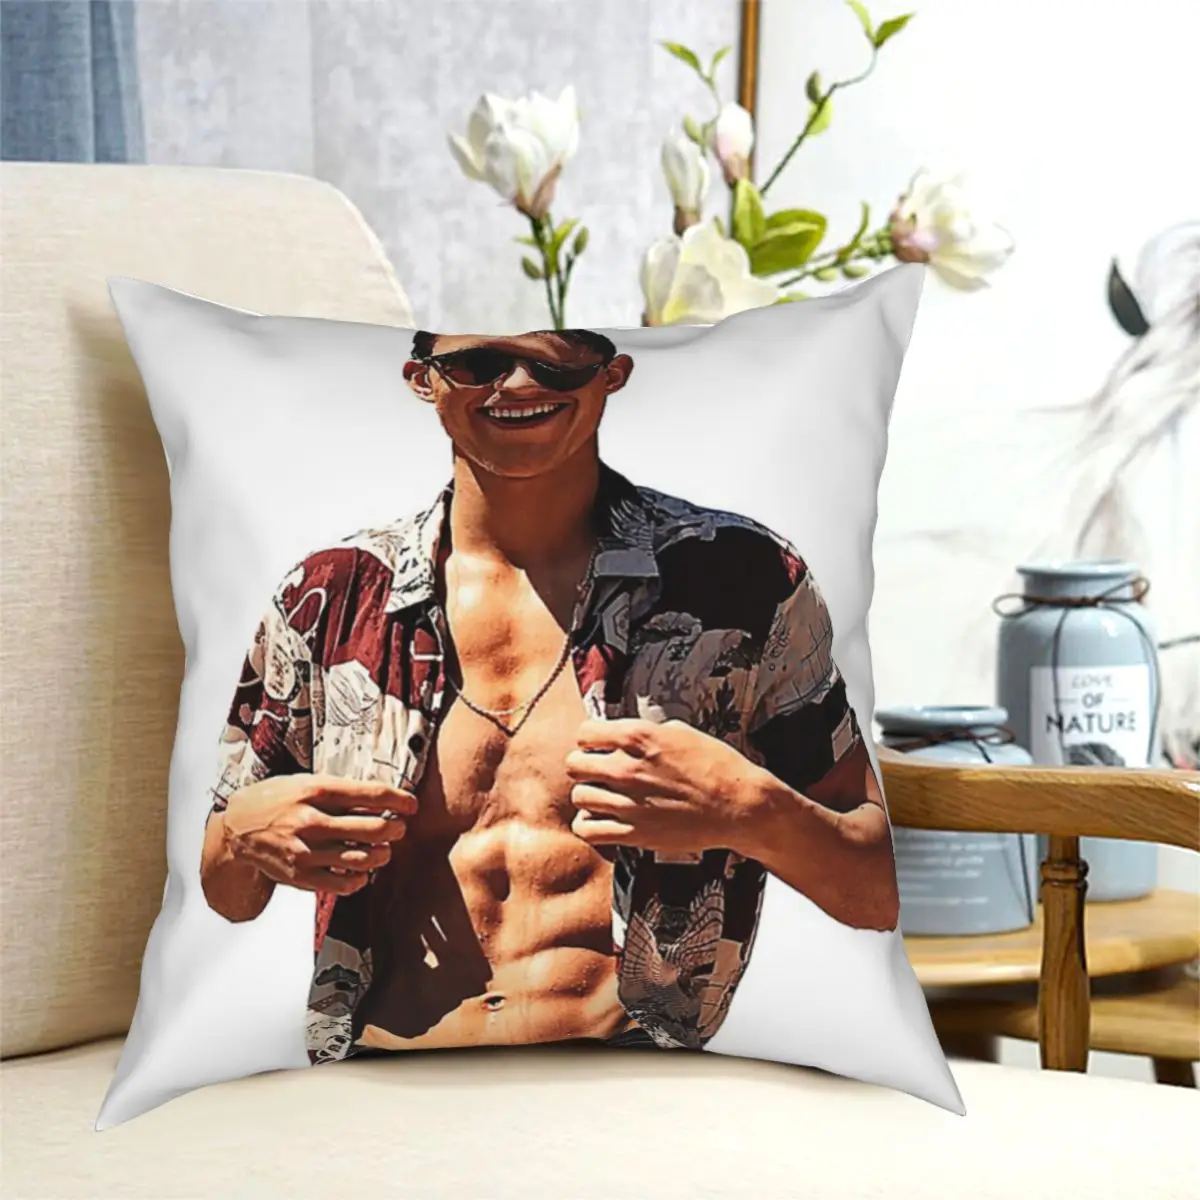 

Tom Holland Shirtless Design Throw Pillow Cushion Cover Decorative Pillowcases Case Home Sofa Cushions 40x40,45x45cm